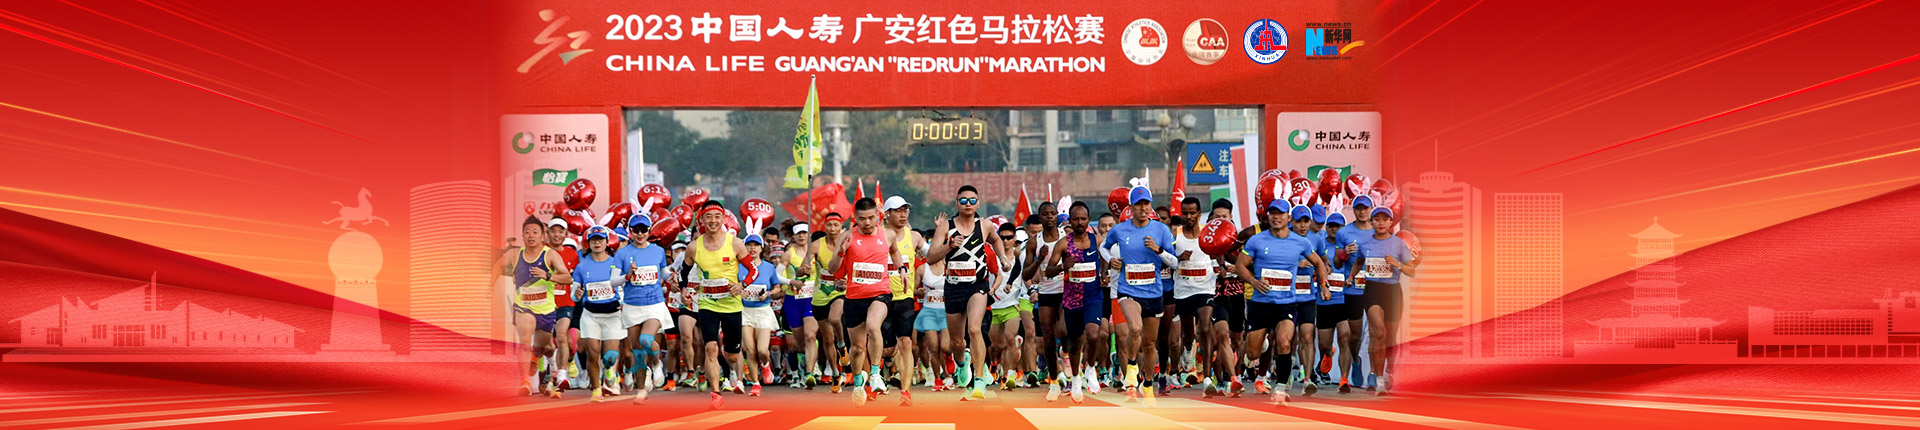 2023中国人寿广安红色马拉松赛鸣枪起跑